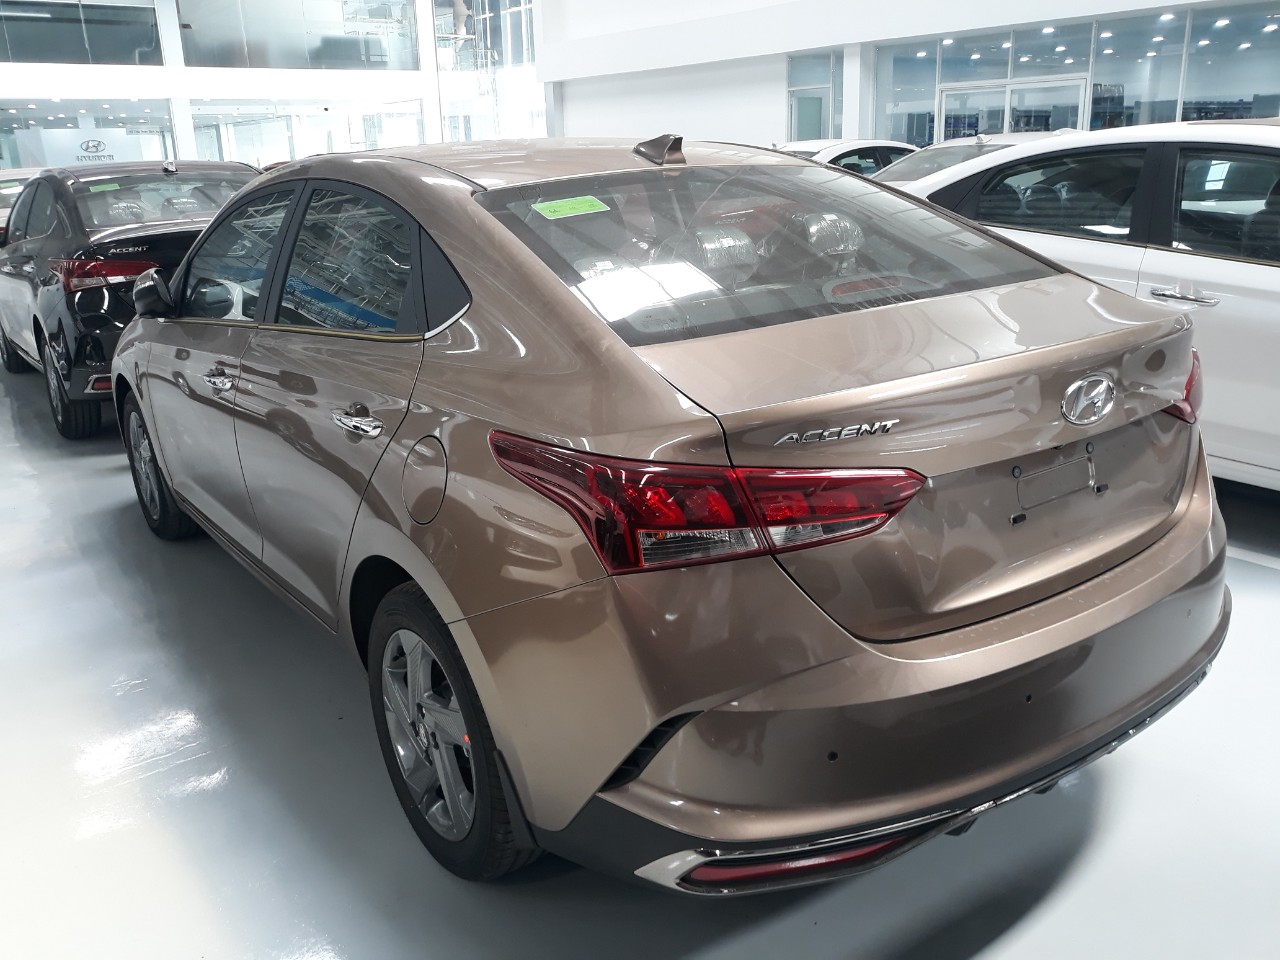 Bán Hyundai Accent 1.4 tự động + giá ưu đãi khủng cho HCM + tặng bảo hiểm vật chất